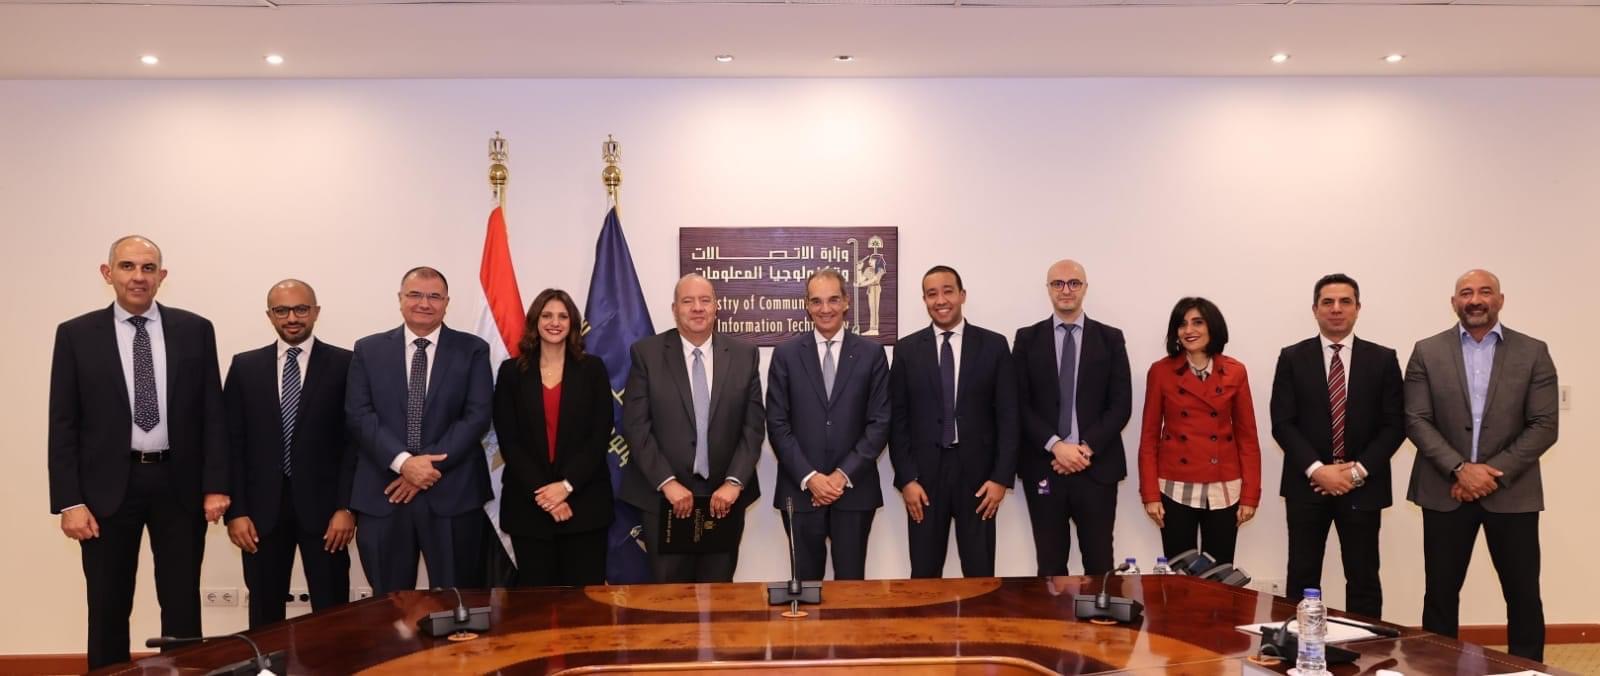  وزير الاتصالات وتكنولوجيا المعلومات  يشهد توقيع عقد بين المصرية للاتصالات وشركة راية